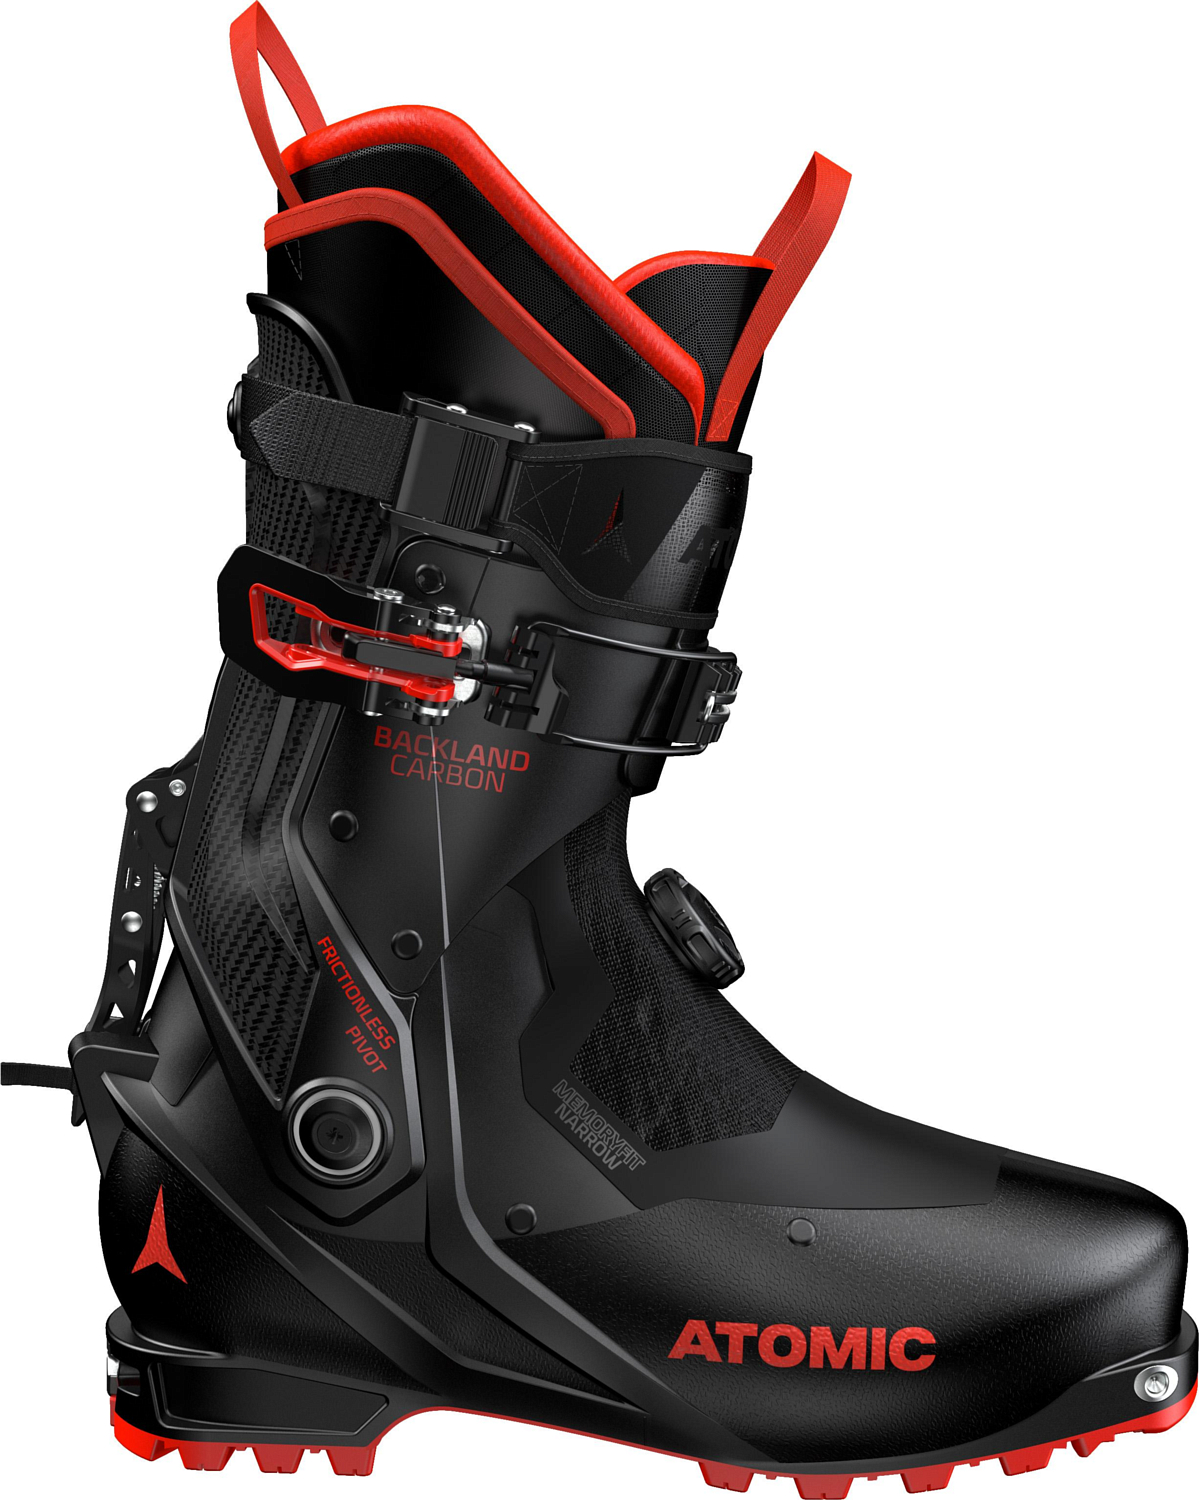 Горнолыжные ботинки ATOMIC BACKLAND CARBON Black/Red